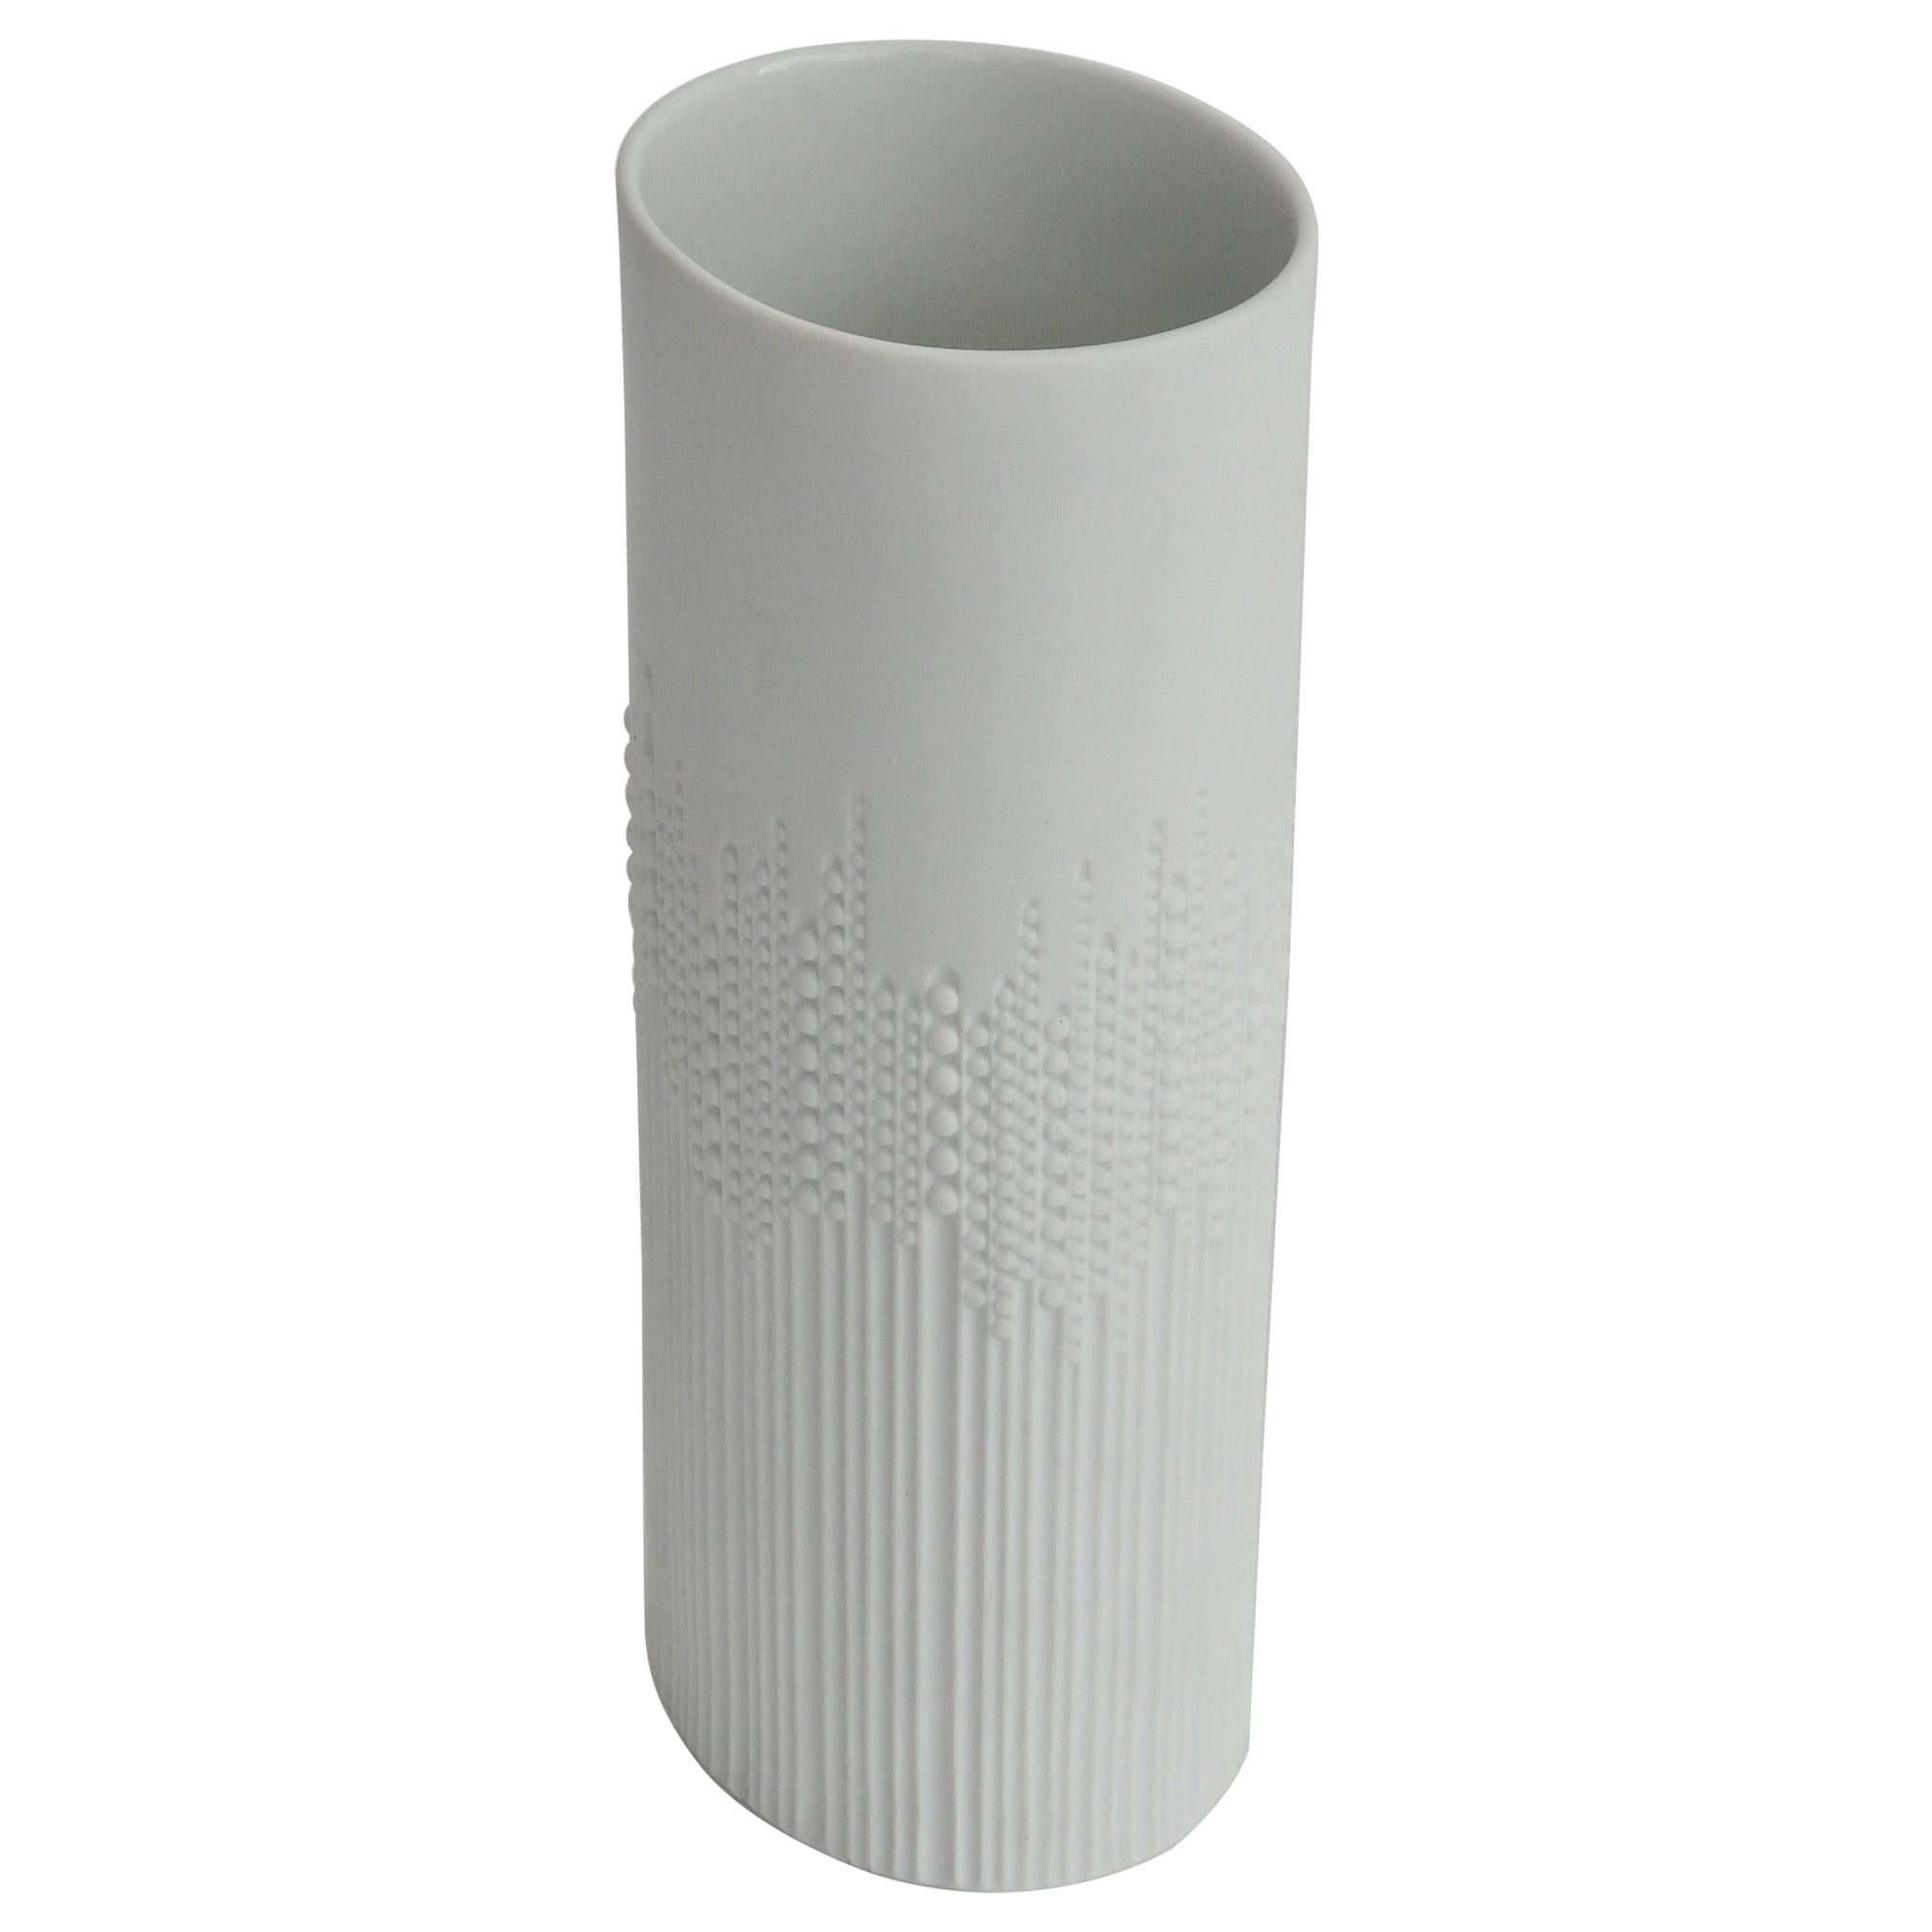 Tapio Wirkkala Bisque White Rosenthal Studio Line "Drops" Vase